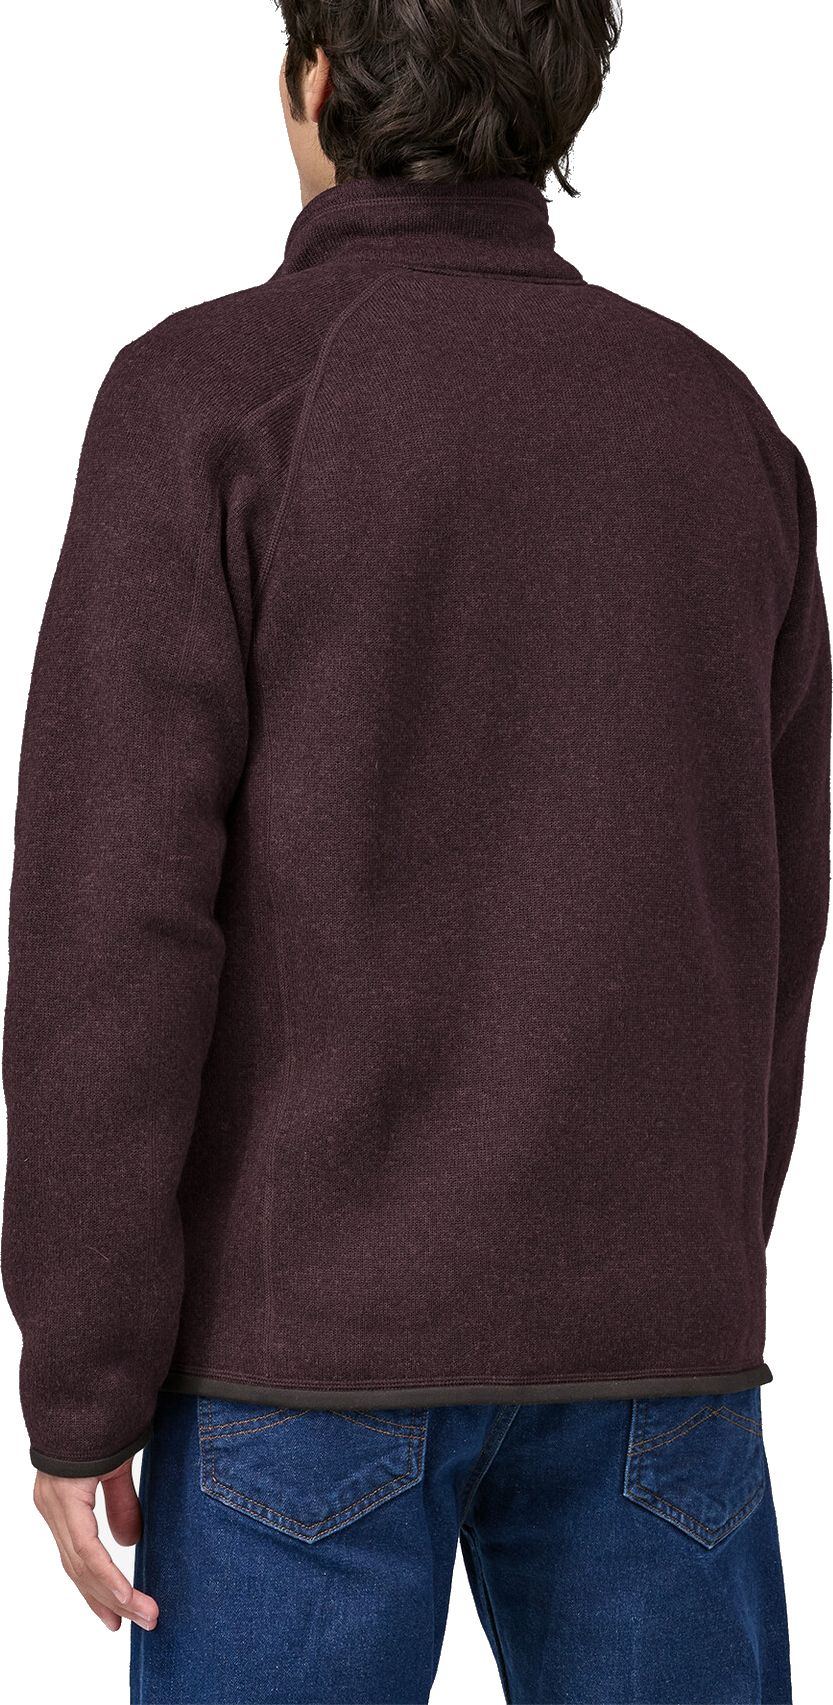  Patagonia Felpa Men's Better Sweater Fleece Jacket Obsidian Plum Bordeaux Uomo - 3